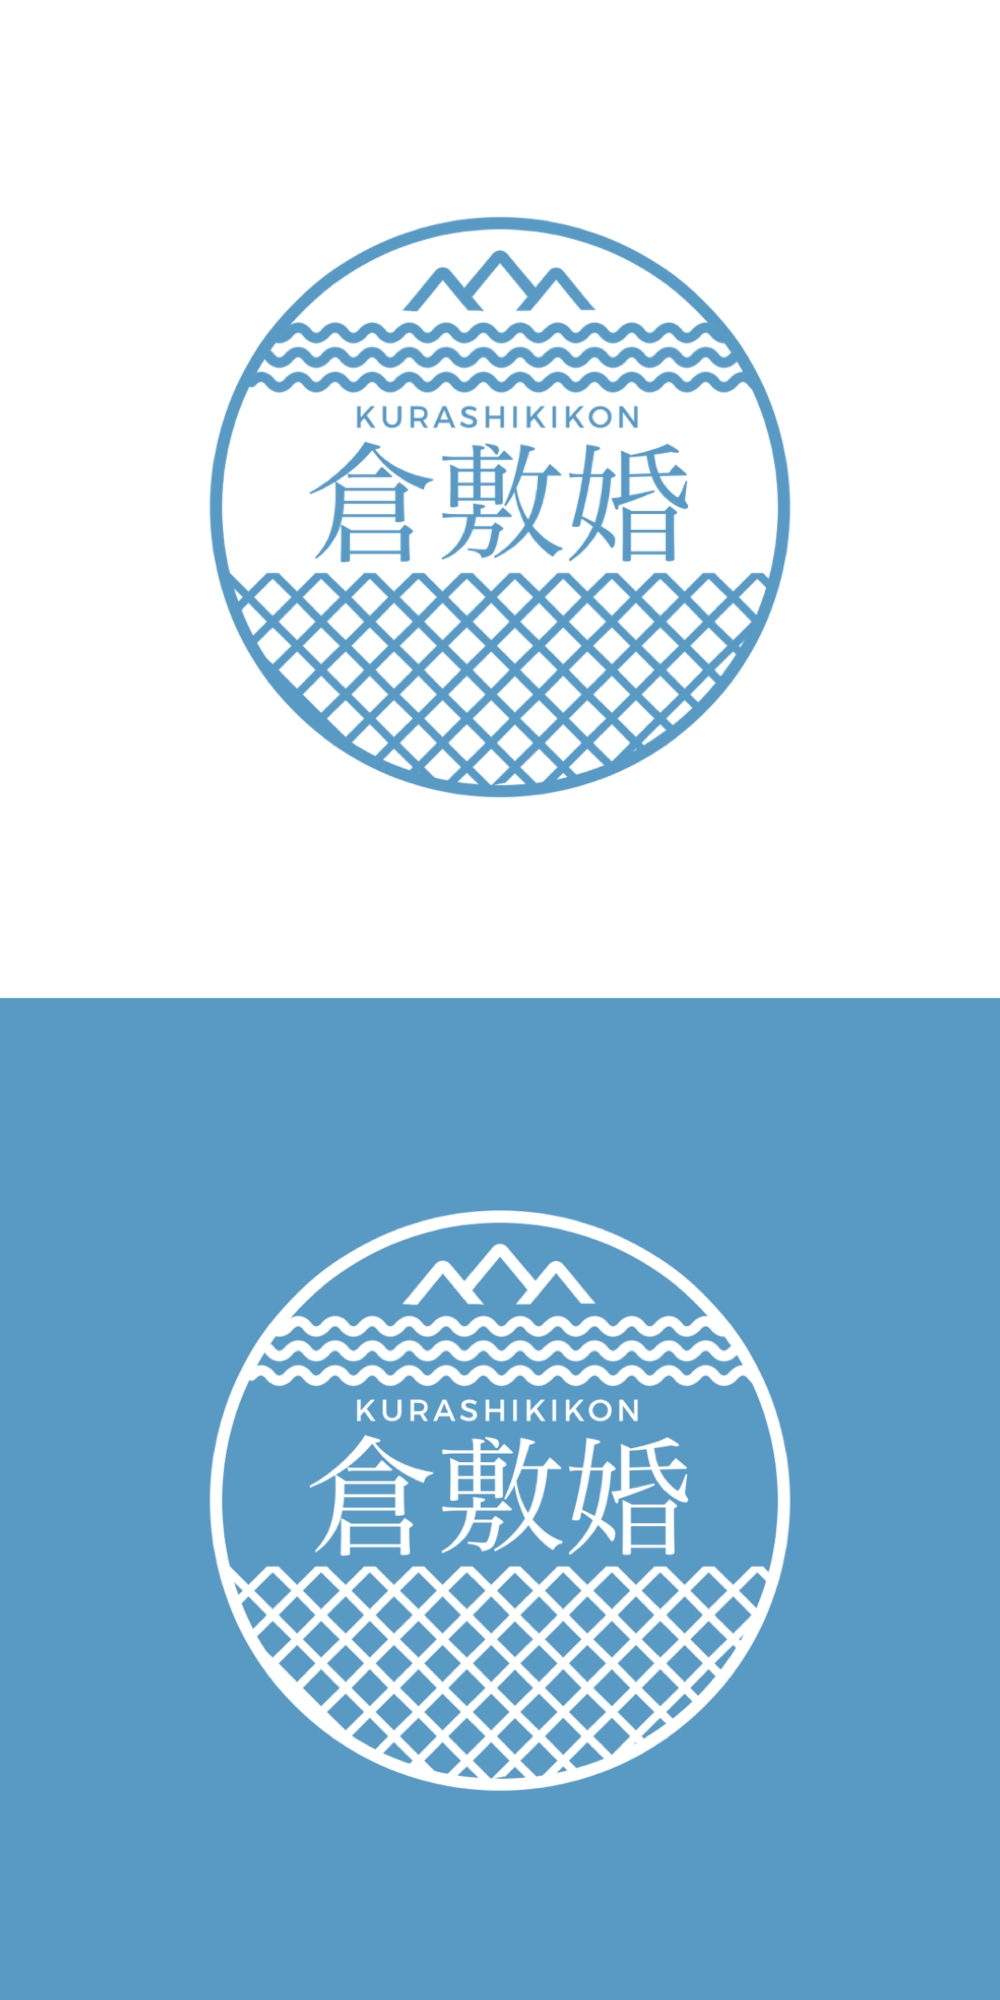 ウェディングサロン「倉敷婚」のロゴ